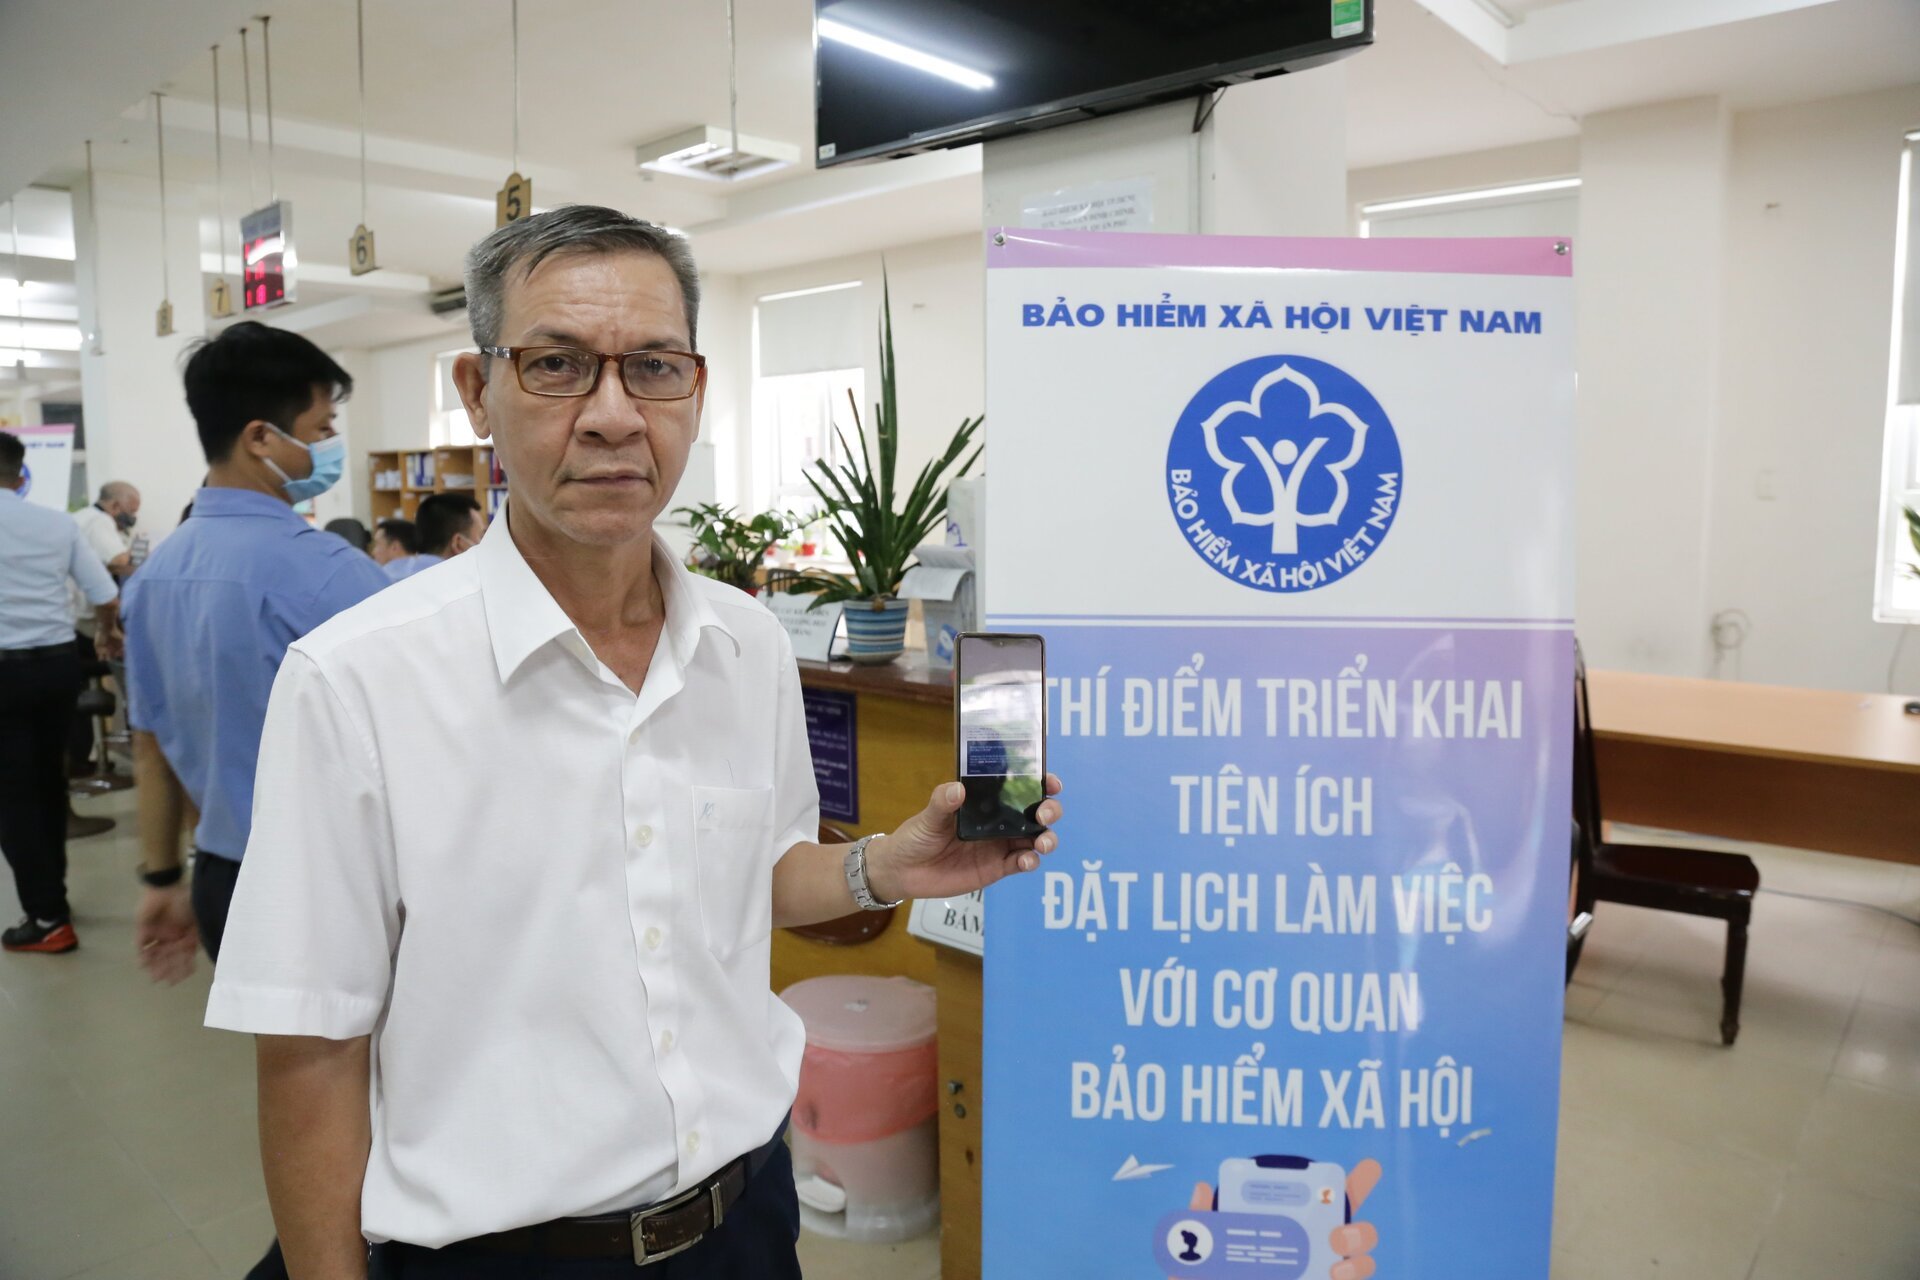 Ông Vũ Quốc Thúc (59 tuổi, quận Bình Thạnh, TP.Hồ Chí Minh) đánh giá tính năng đặt lịch làm việc rất thuận tiện, giúp người dân chủ động hơn trong giải quyết TTHC